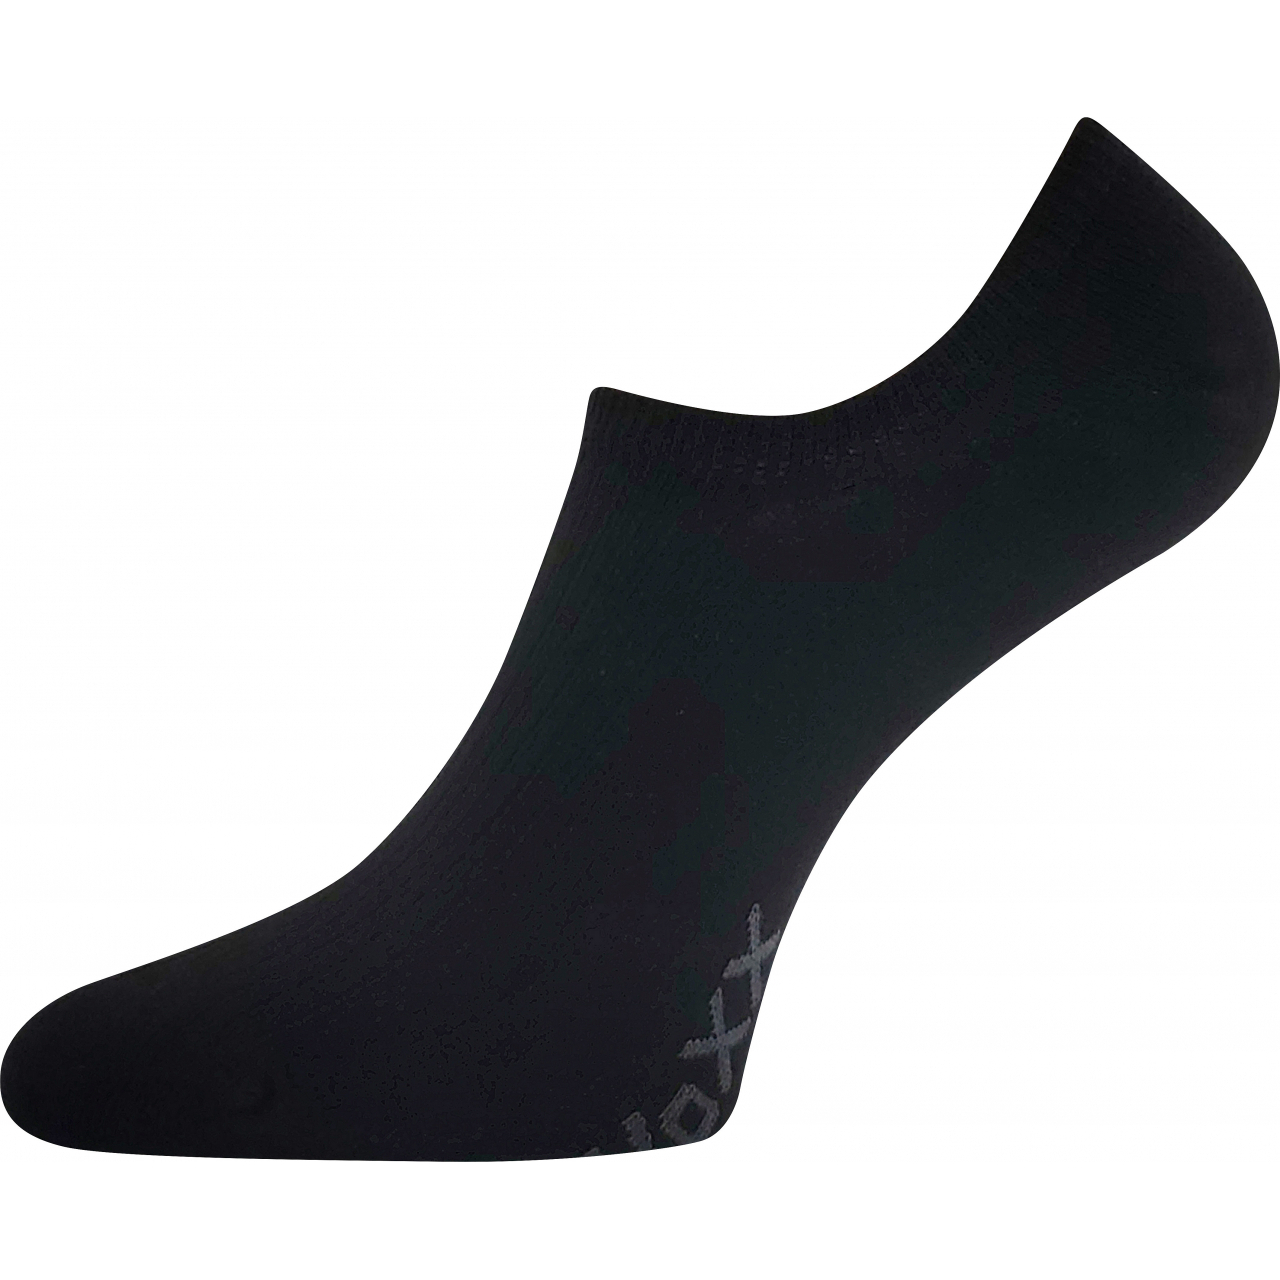 Ponožky unisex krátké Voxx Hagrid - černé, 39-42